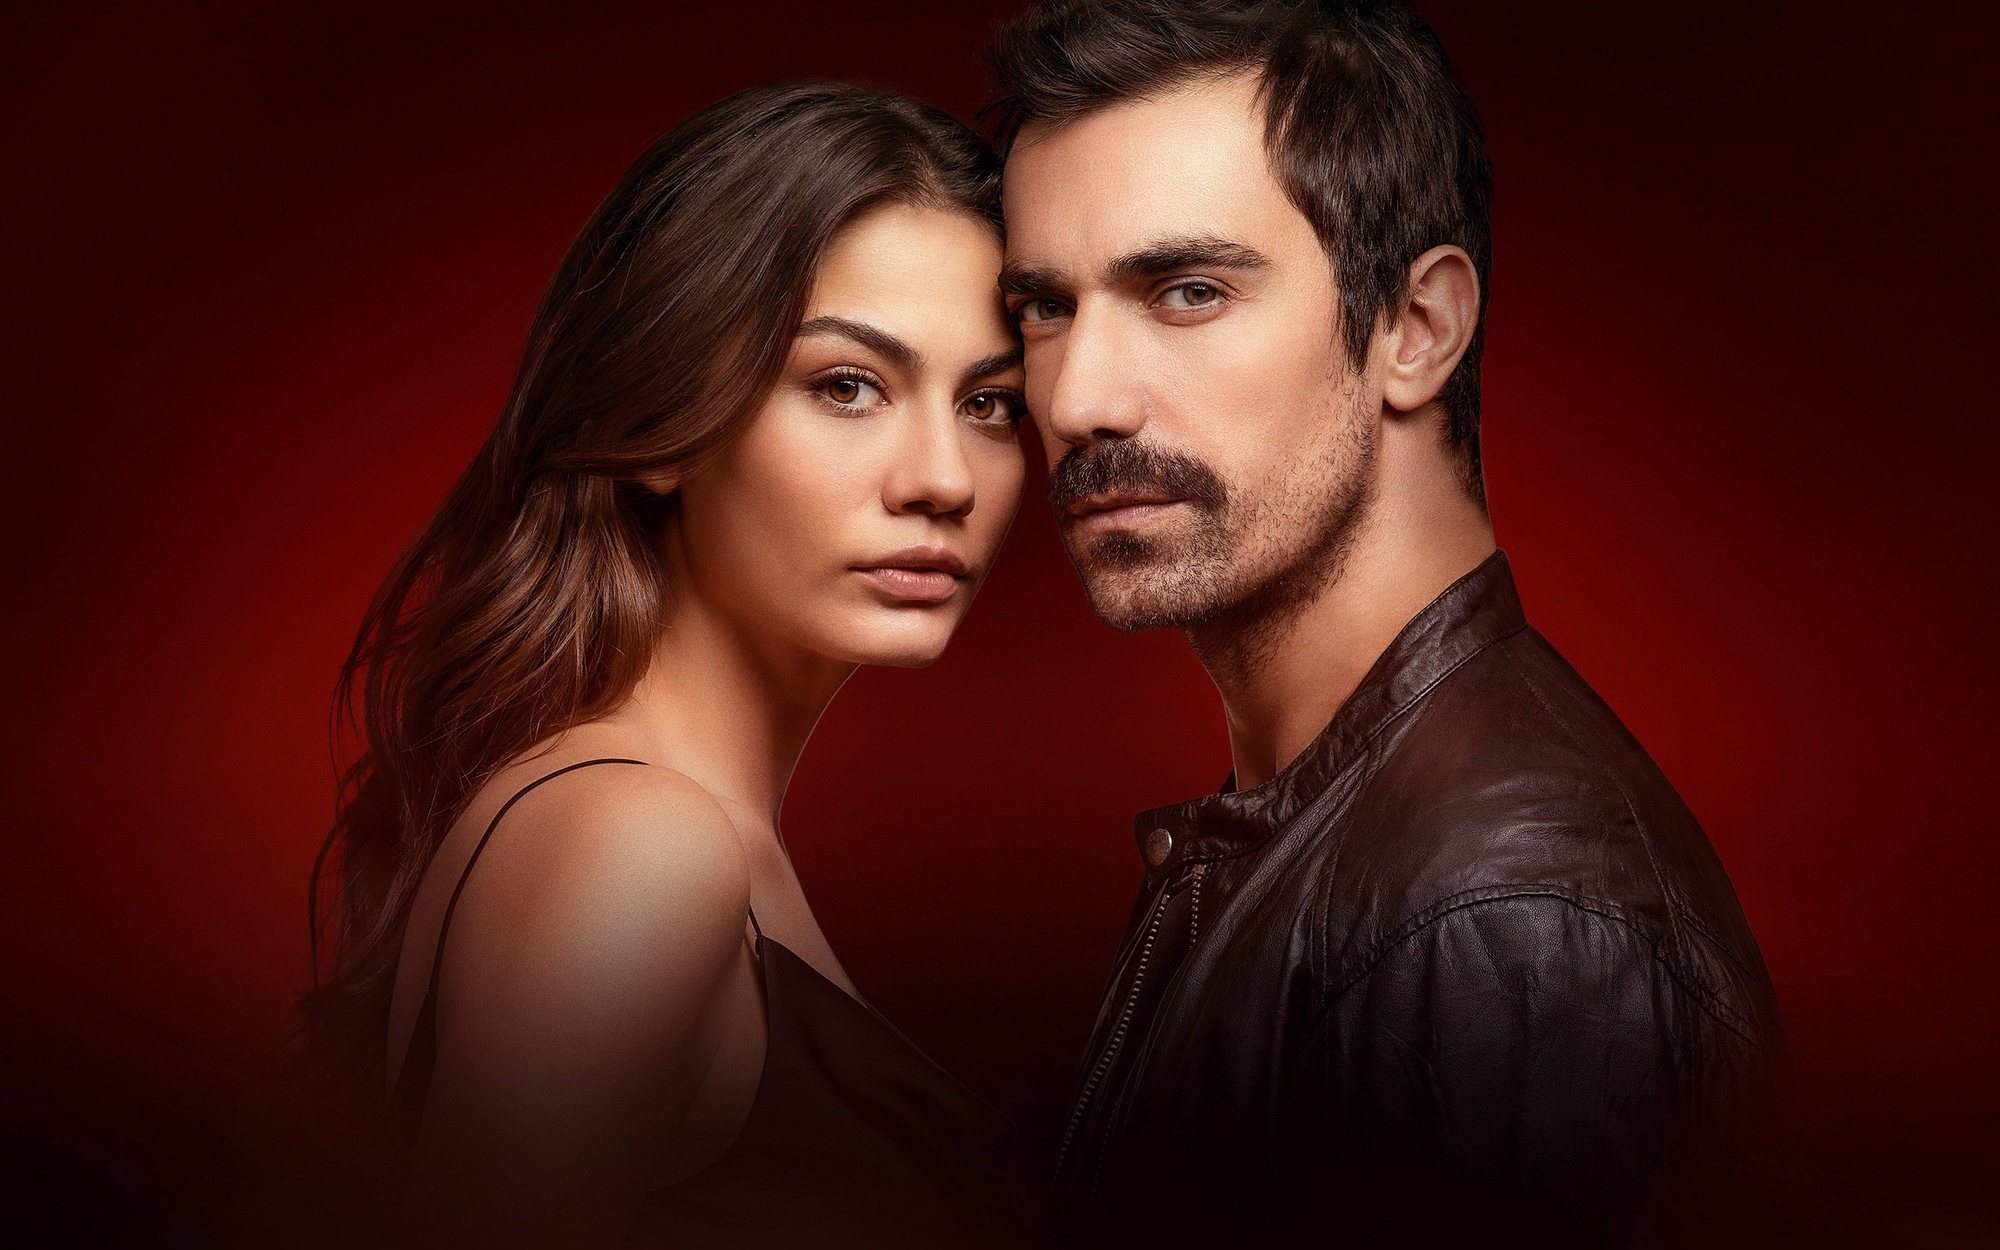 Mitele Plus preestrena 'Matrimonio por sorpresa', la nueva serie turca de Can Yaman, el 14 de diciembre